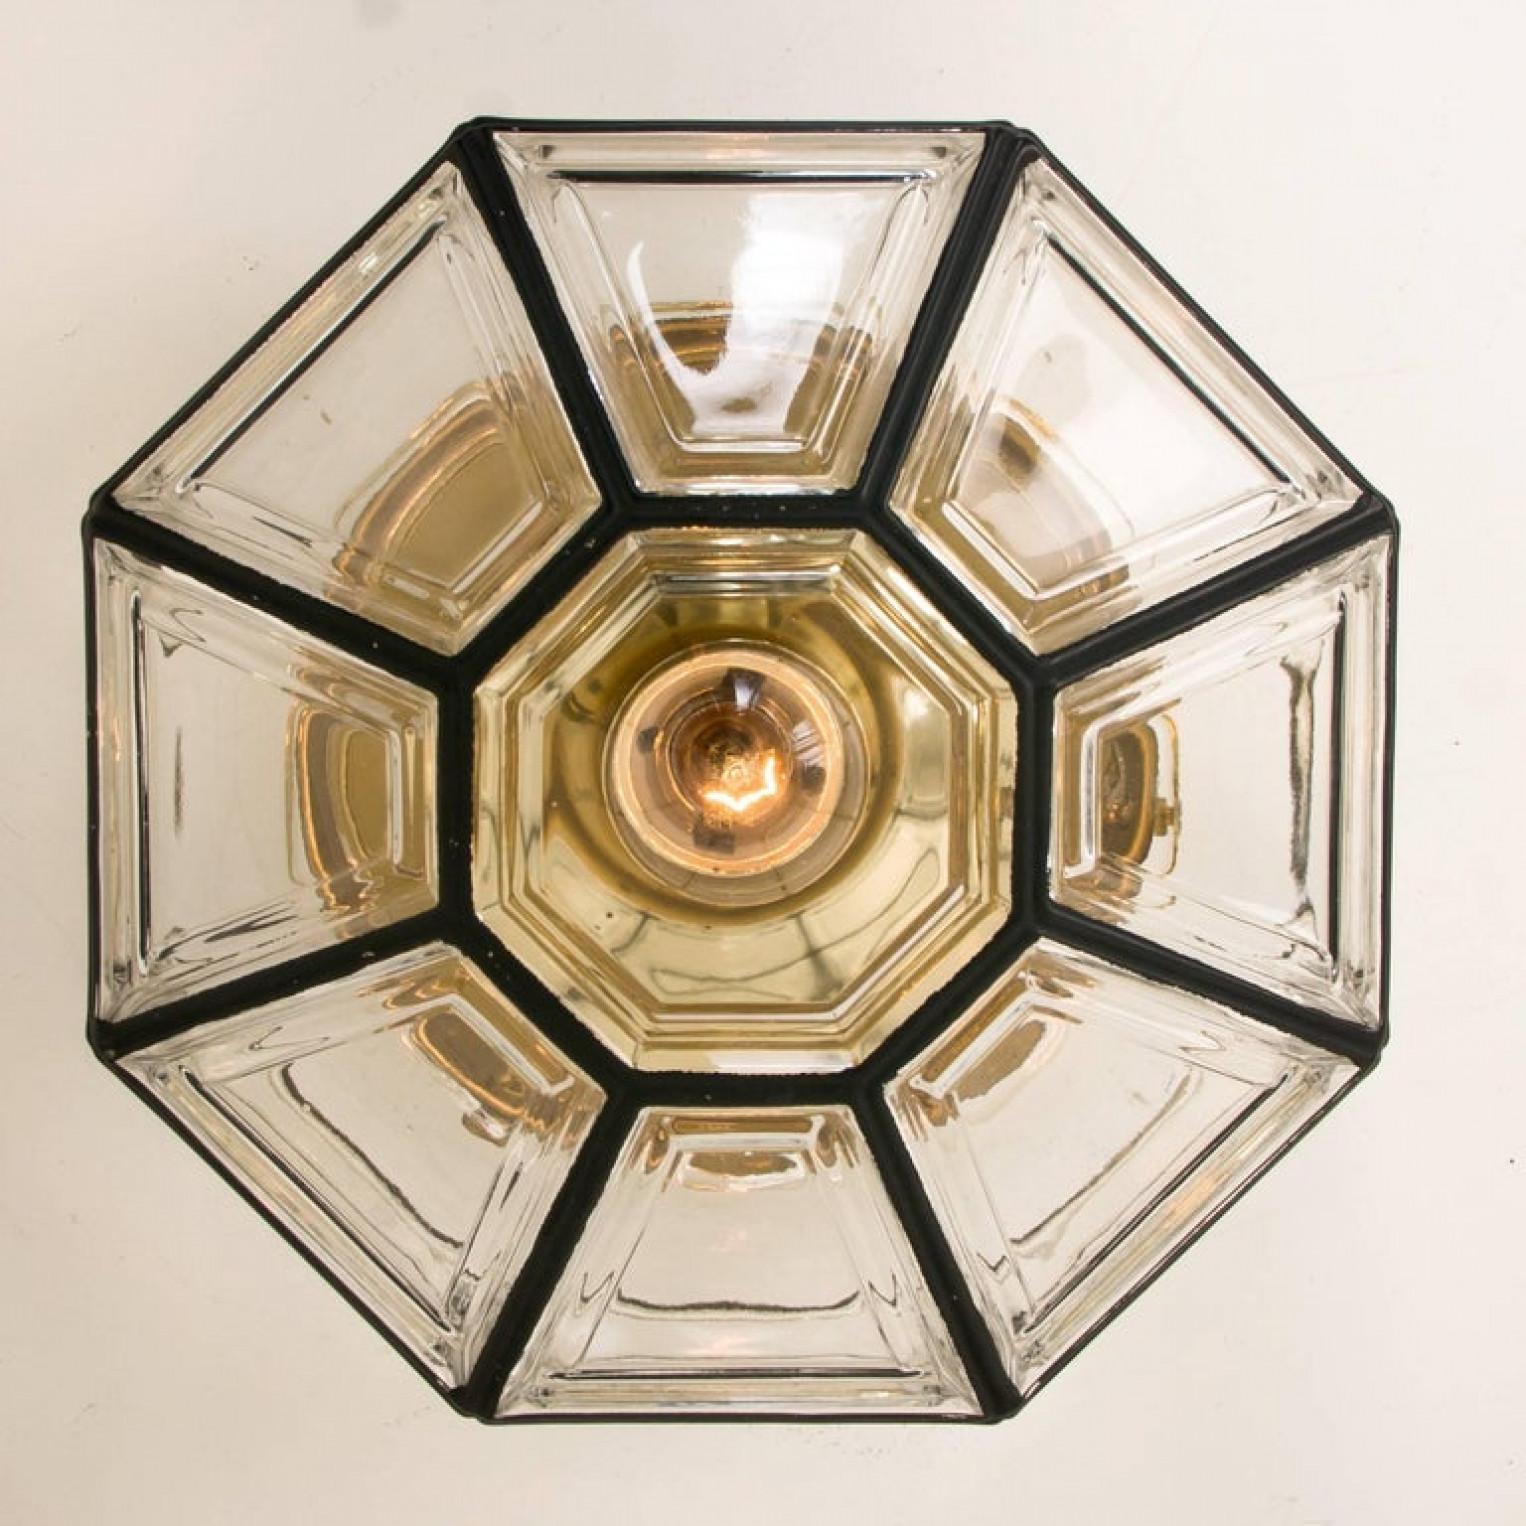 Diese achteckige Glasleuchte wird von Glashütte Limburg in den 1960er Jahren in Deutschland hergestellt. Schöne Handwerkskunst. Die Leuchte aus kunstvollem Klarglas ist mit einer E27-Fassung und einer Messingaufhängung ausgestattet.

Sehr guter